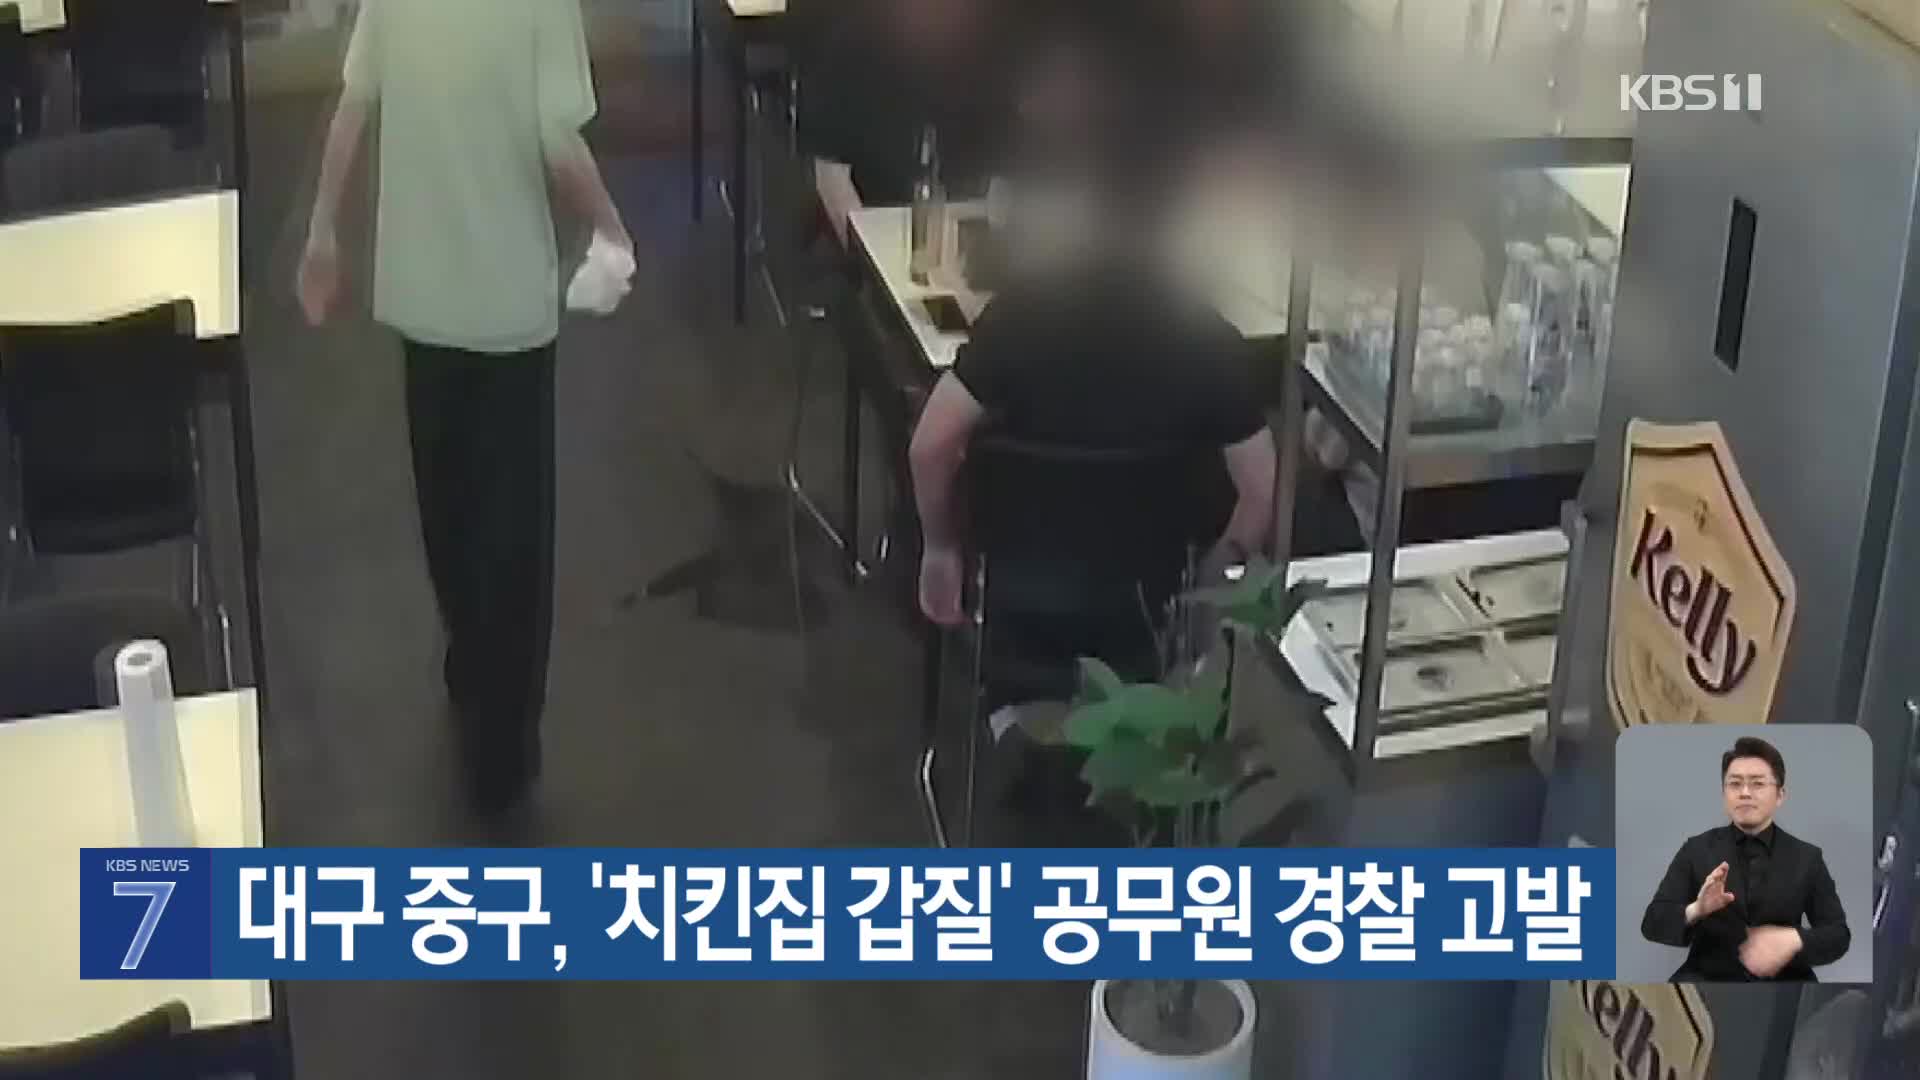 대구 중구, ‘치킨집 갑질’ 공무원 경찰 고발